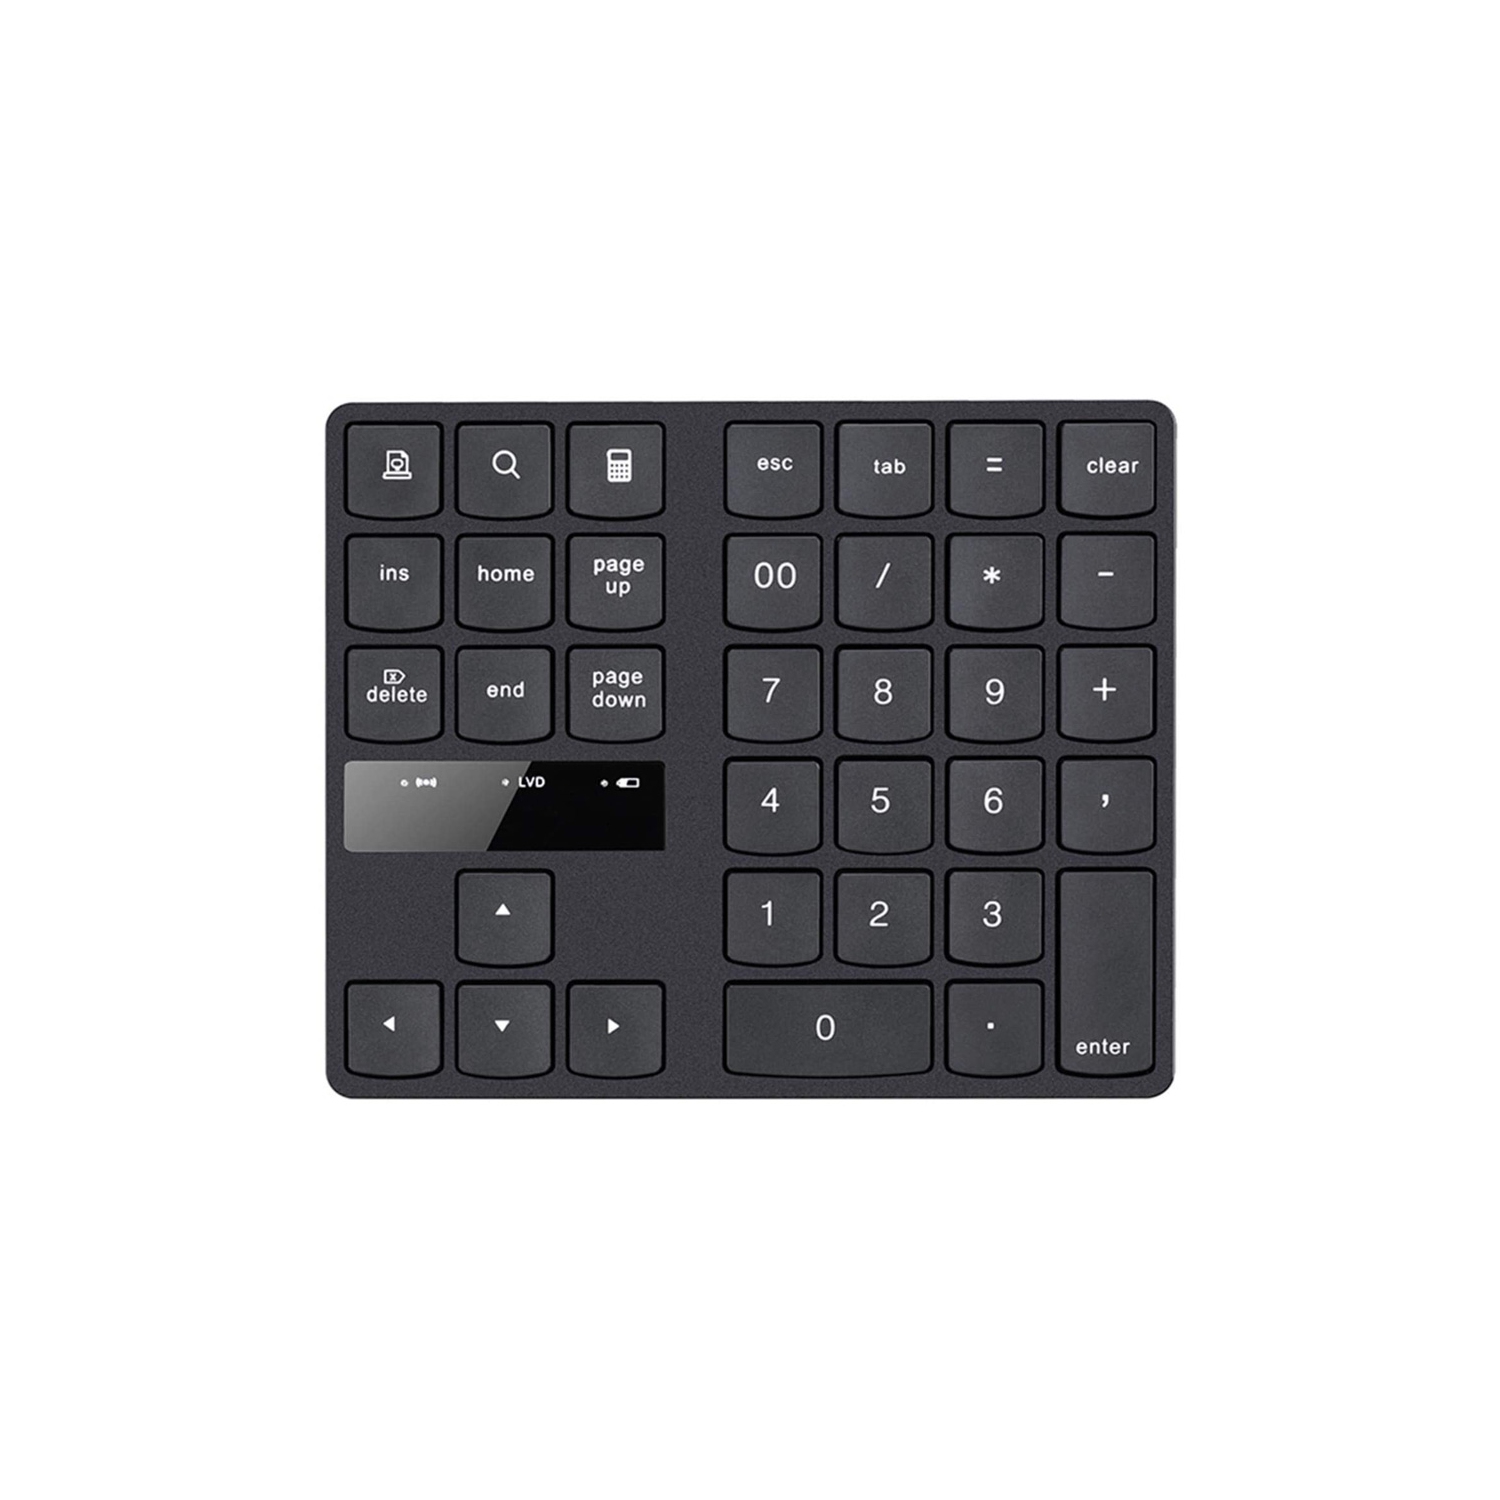 USB Numeric Keypad Portable Slim Mini Number Pad for Laptop Desktop PC Full Size - axGear